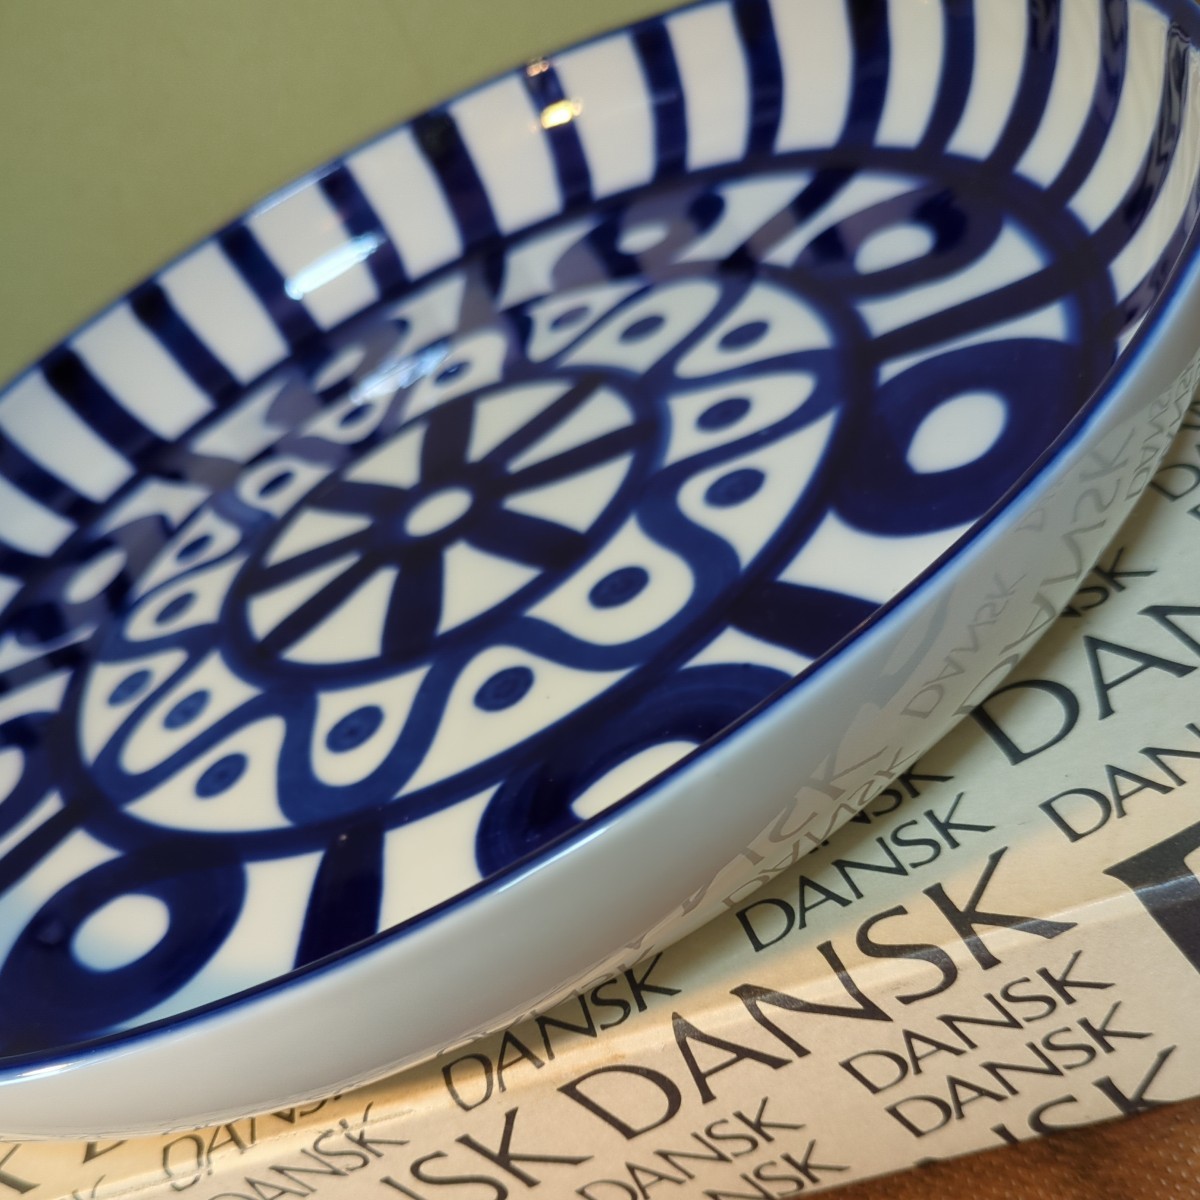 ダンスク DANSK アラベスク サービング プラター プレート 33cm 大皿 手描き 白地 ブルー モダンアート 北欧デンマーク テーブルウェア_画像3